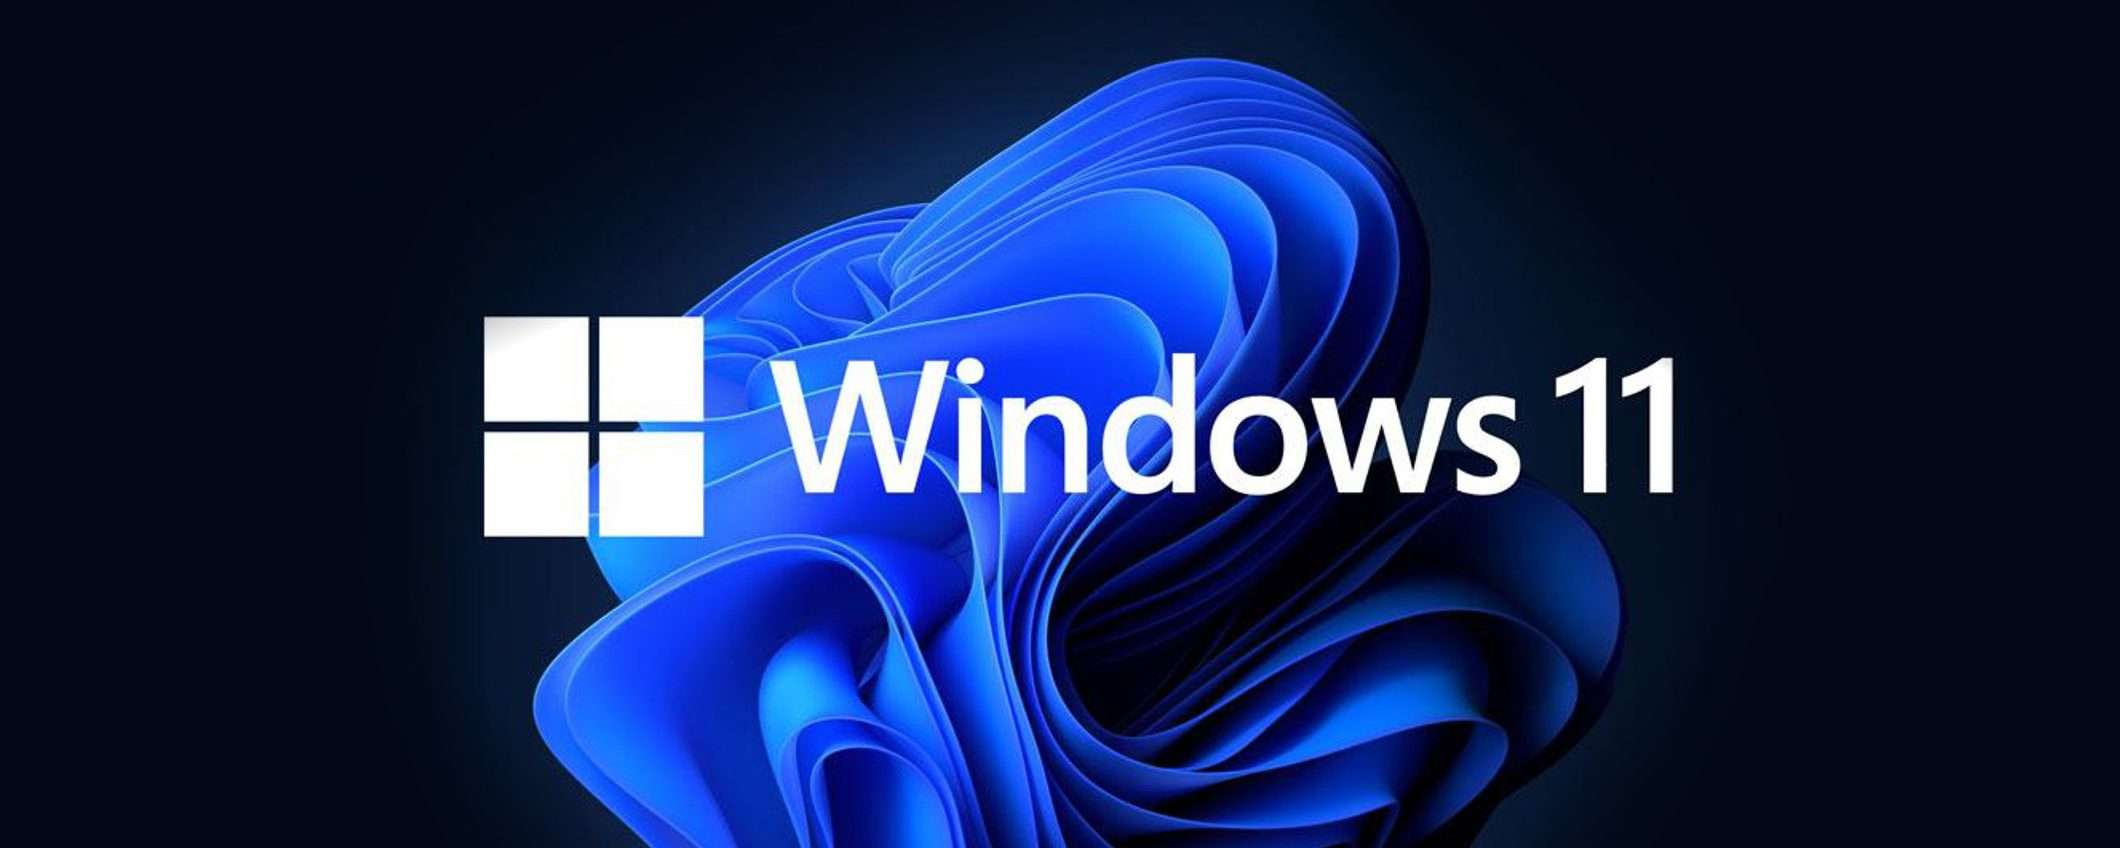 Windows 11: attivo su quasi mezzo miliardo di dispositivi